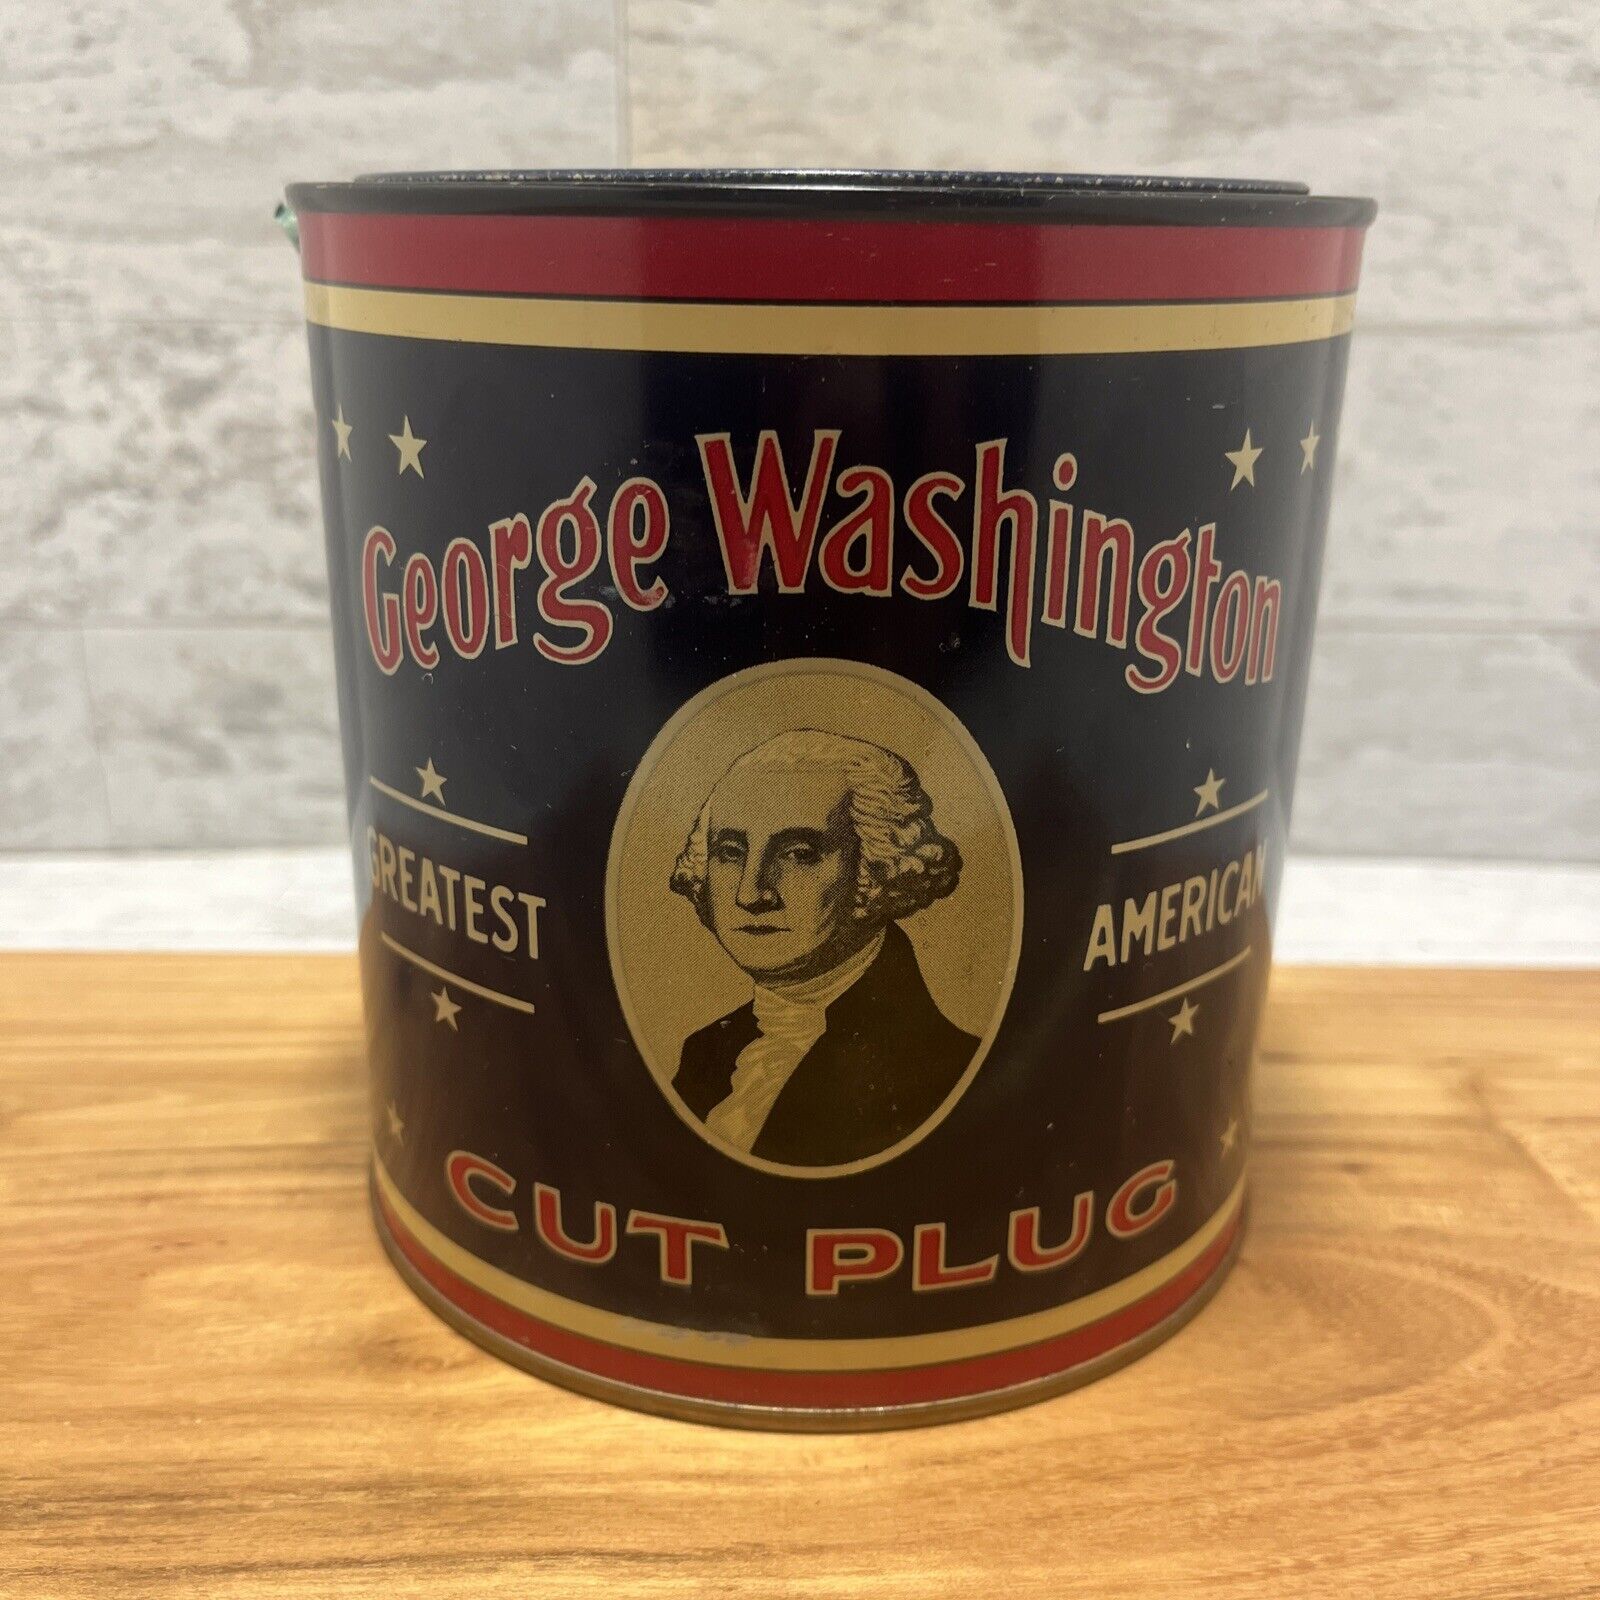 Vintage George Washington Tin Cut Plug Tobacco R.J. Reynolds Can American